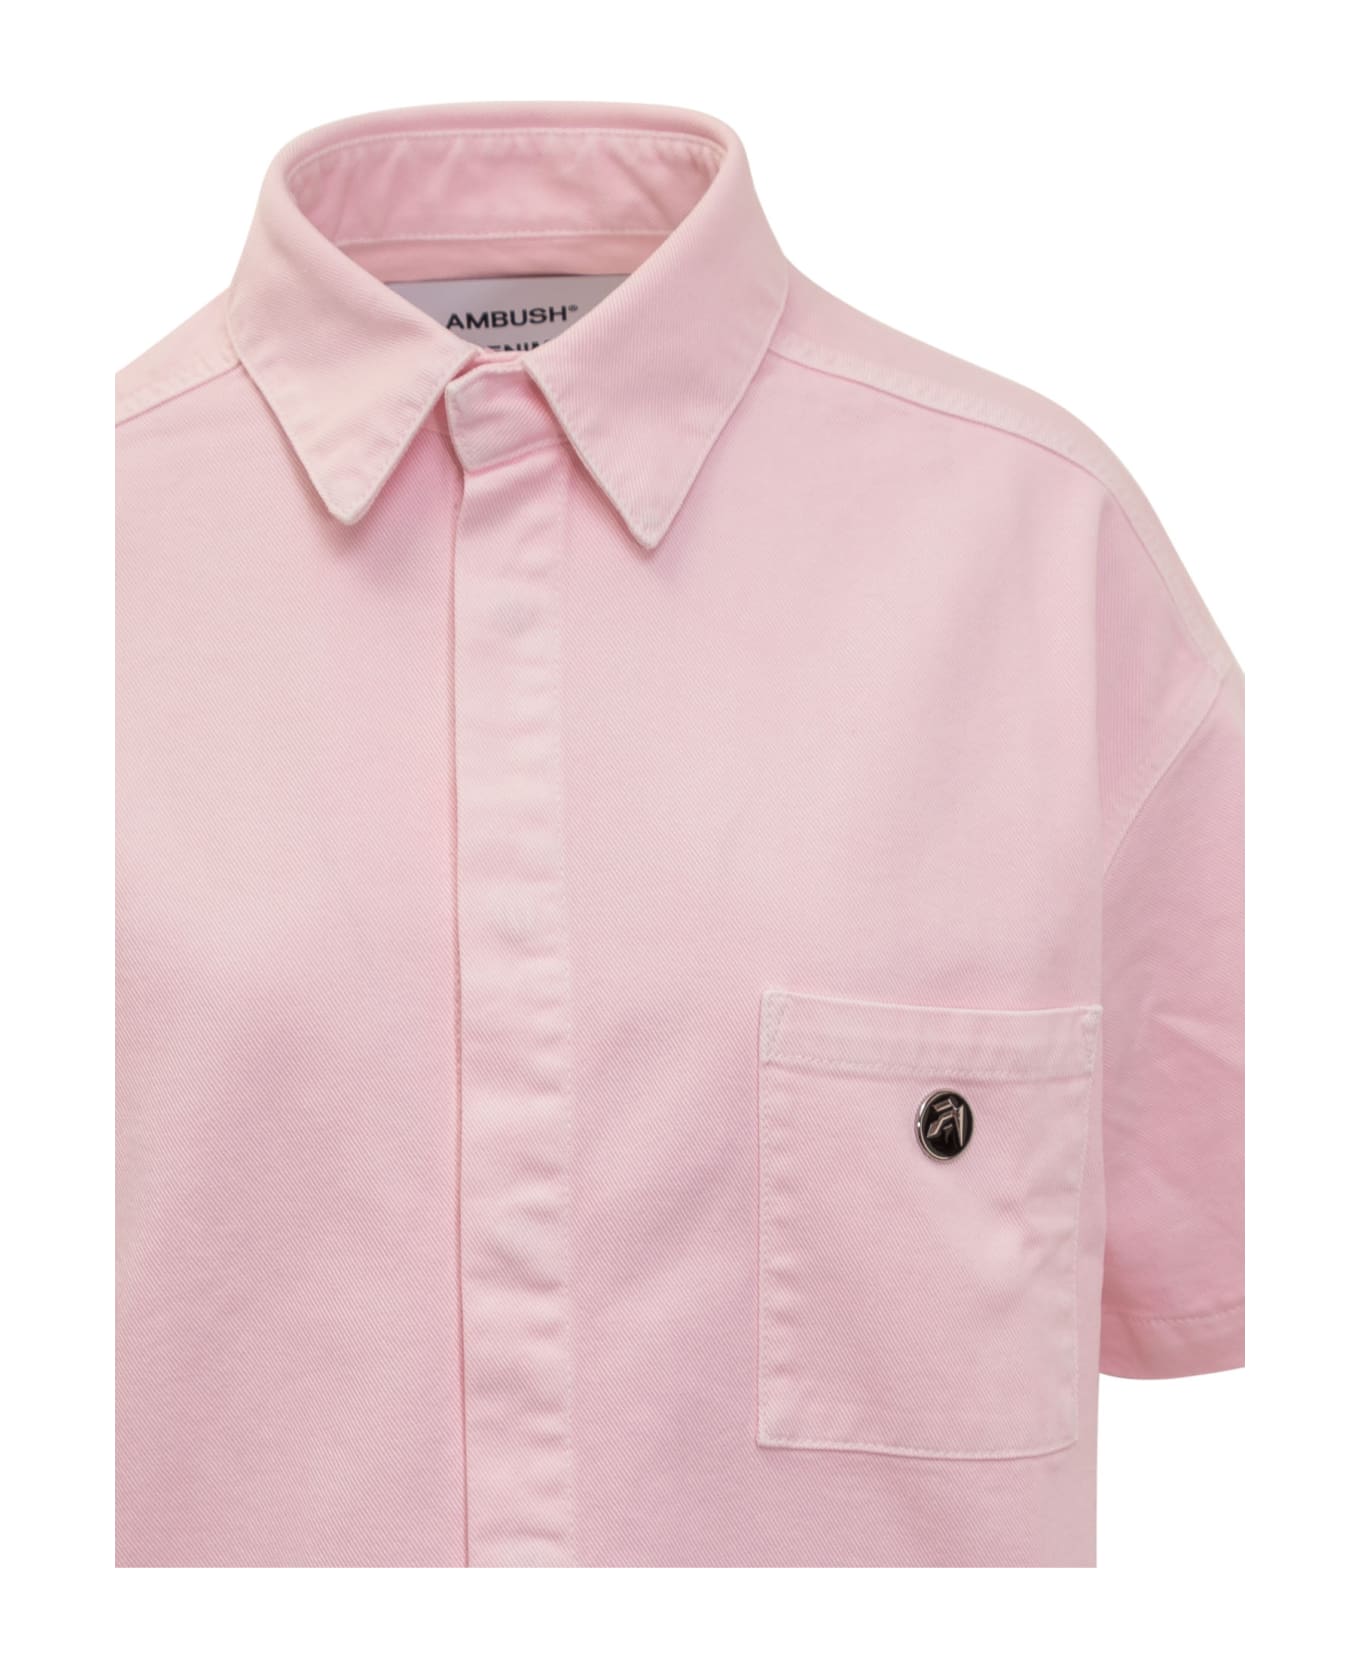 AMBUSH Boxy Fit Shirt With Logo - PINK シャツ